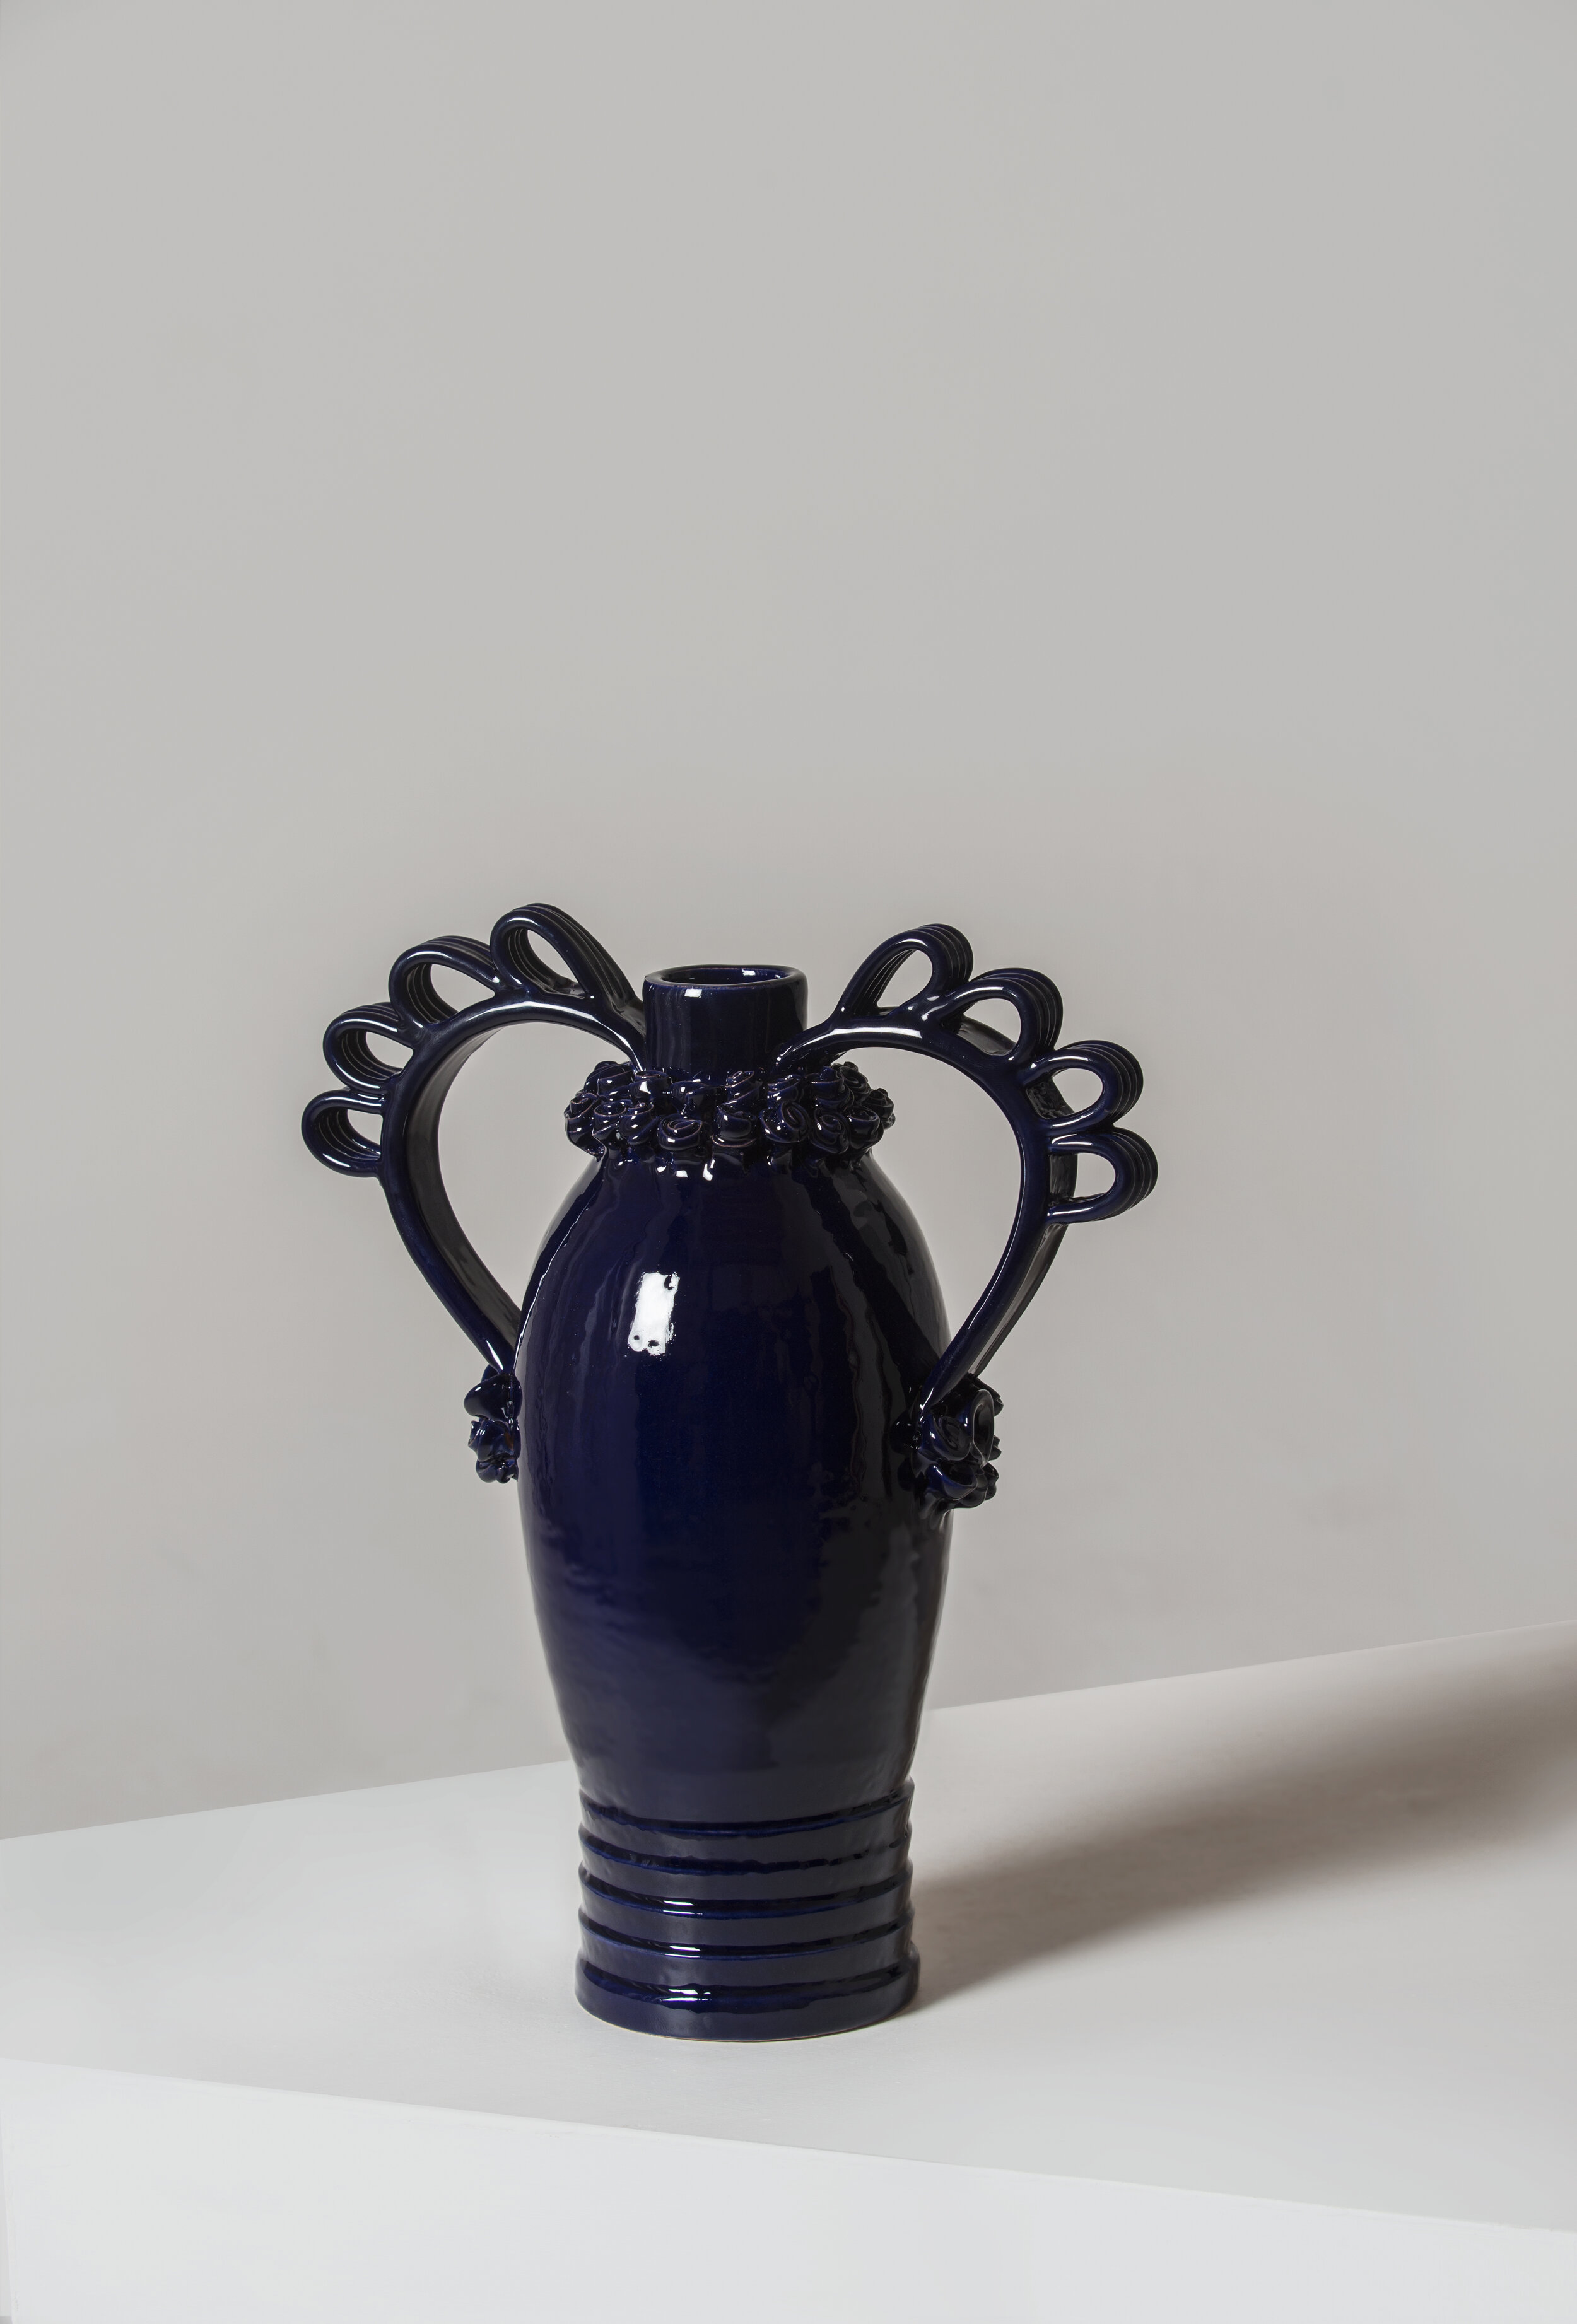 Marria Vase designed by Valentina Cameranesi, made by Walter Usai for Pretziada_blue.jpg